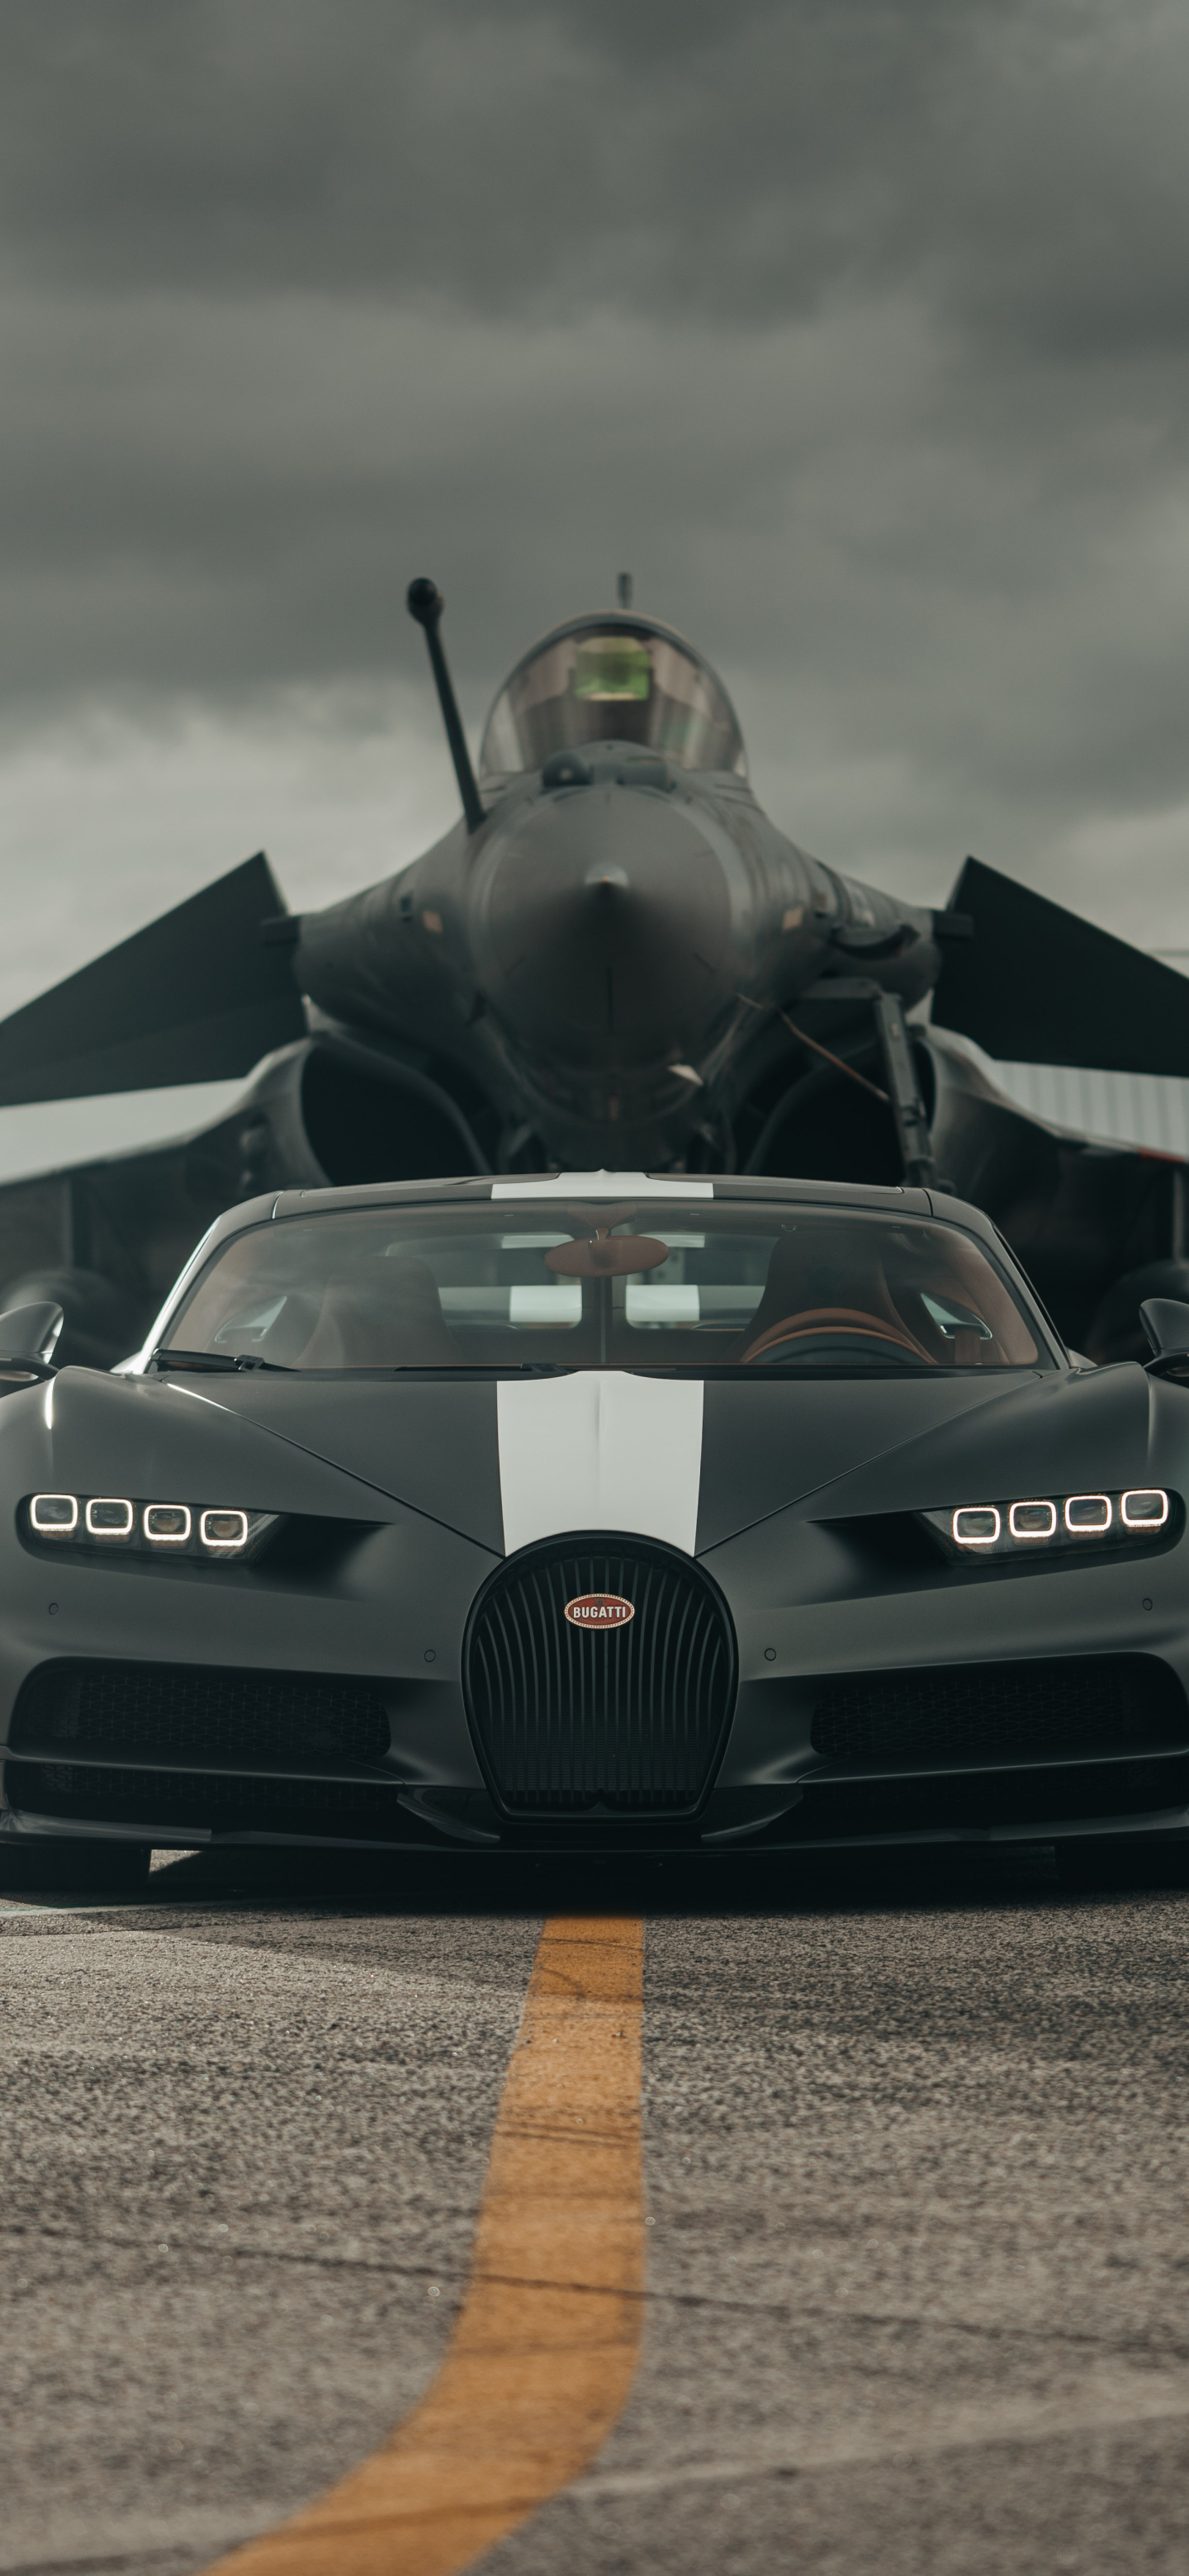 Descarga gratuita de fondo de pantalla para móvil de Bugatti, Coche, Superdeportivo, Caza De Reacción, Bugatti Quirón, Vehículos, Avión De Caza, Coche Negro.